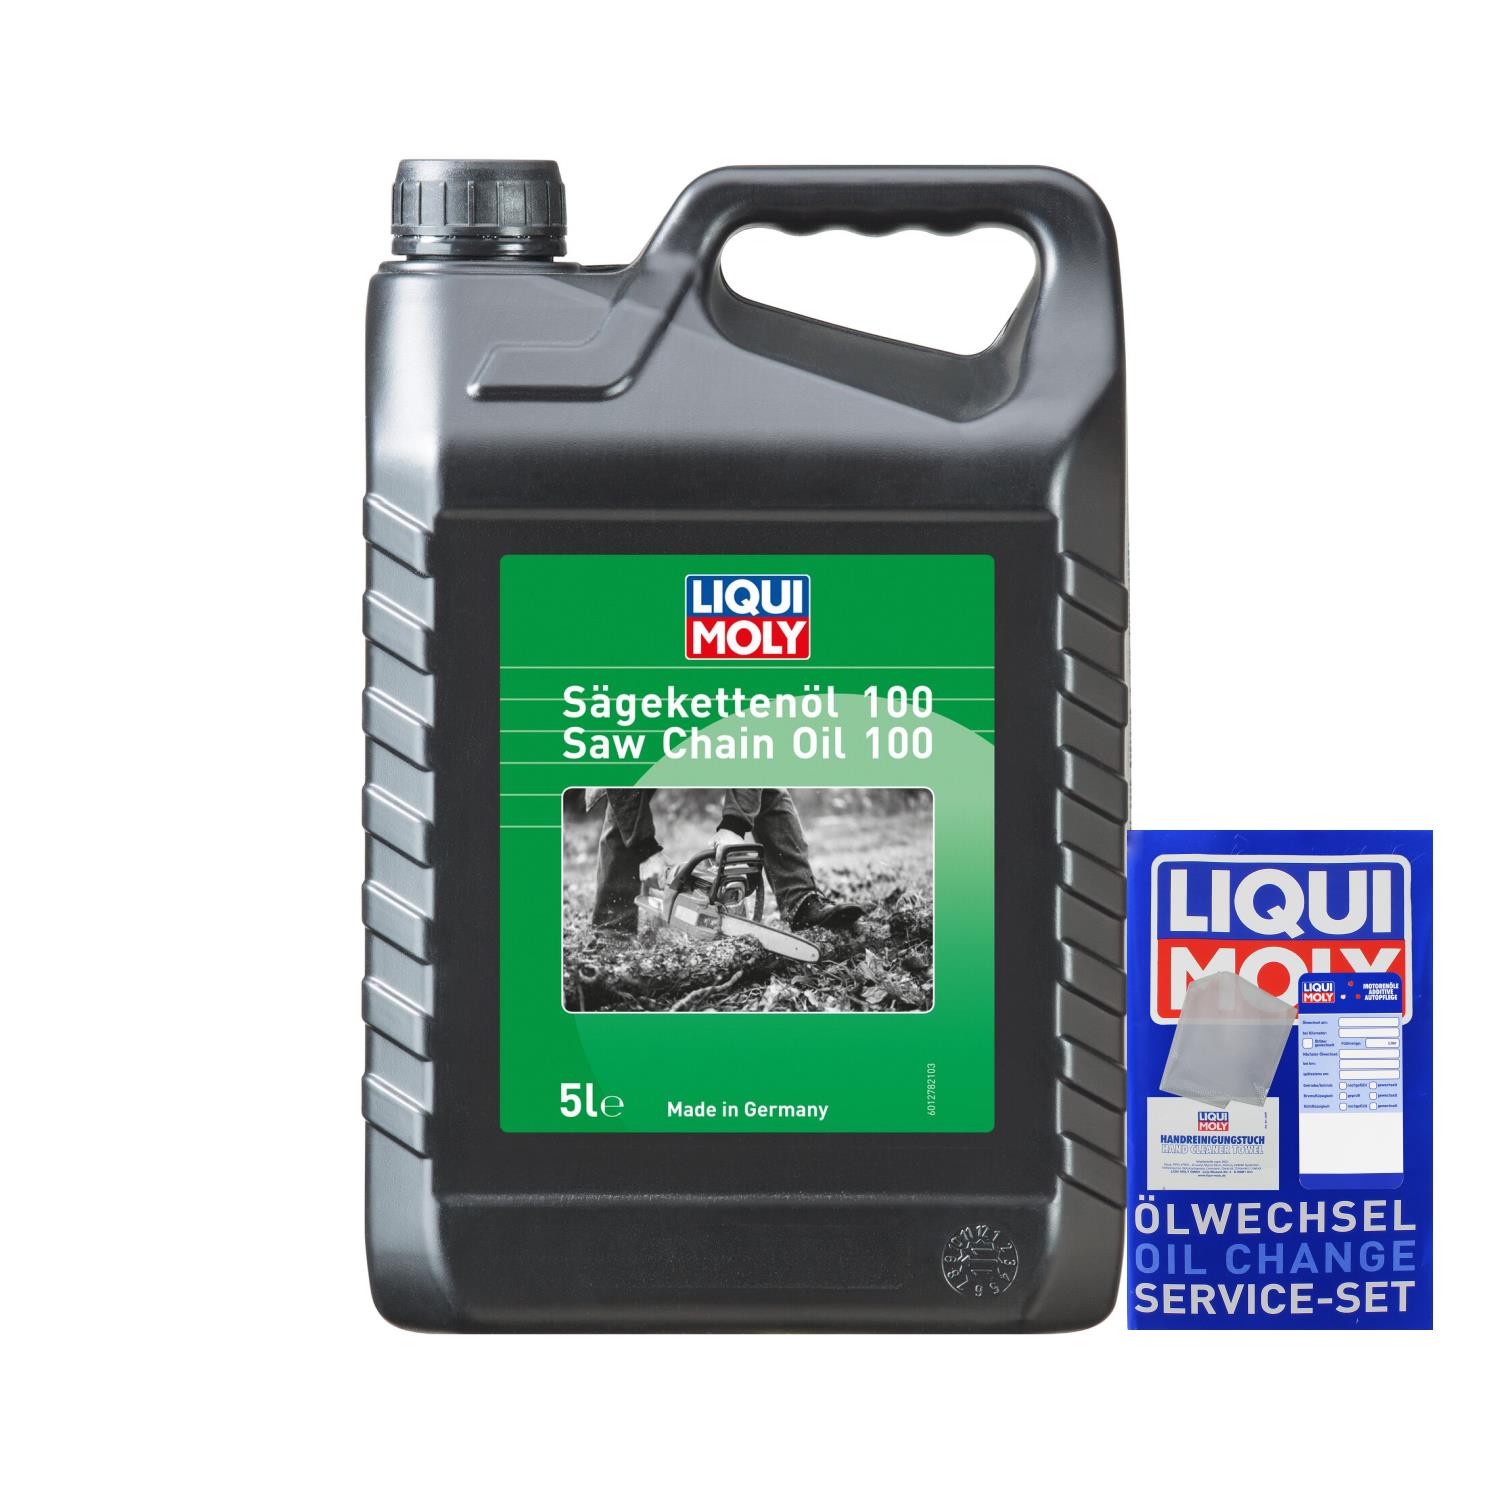 Liqui Moly Säge-Kettenöl 100 Motor Säge Ketten Öl Sägekettenöl 5L